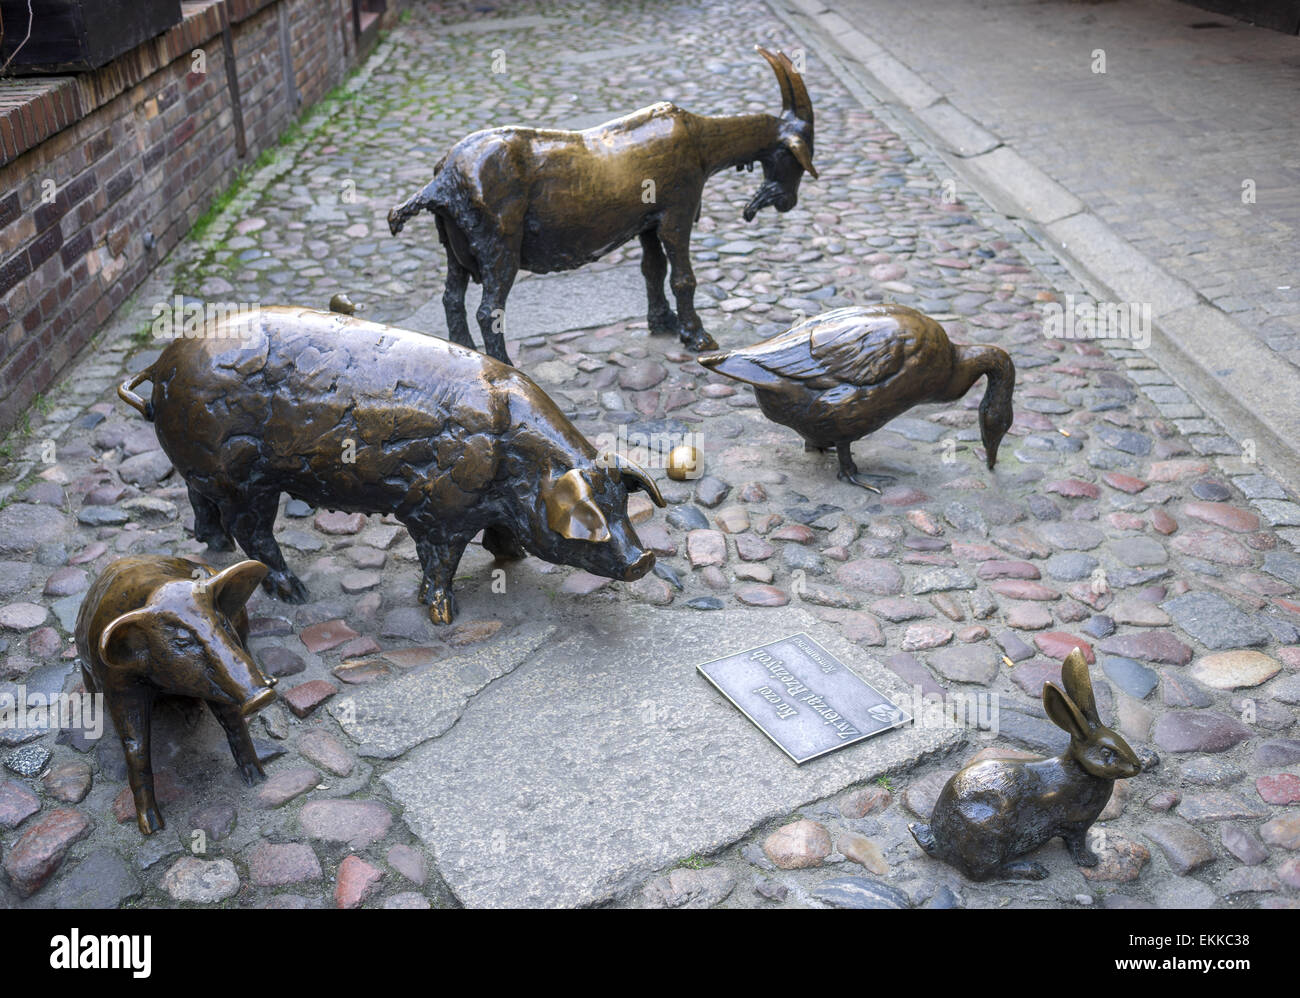 Monument pour commémorer les animaux abattus Jatki Wroclaw Pologne Banque D'Images